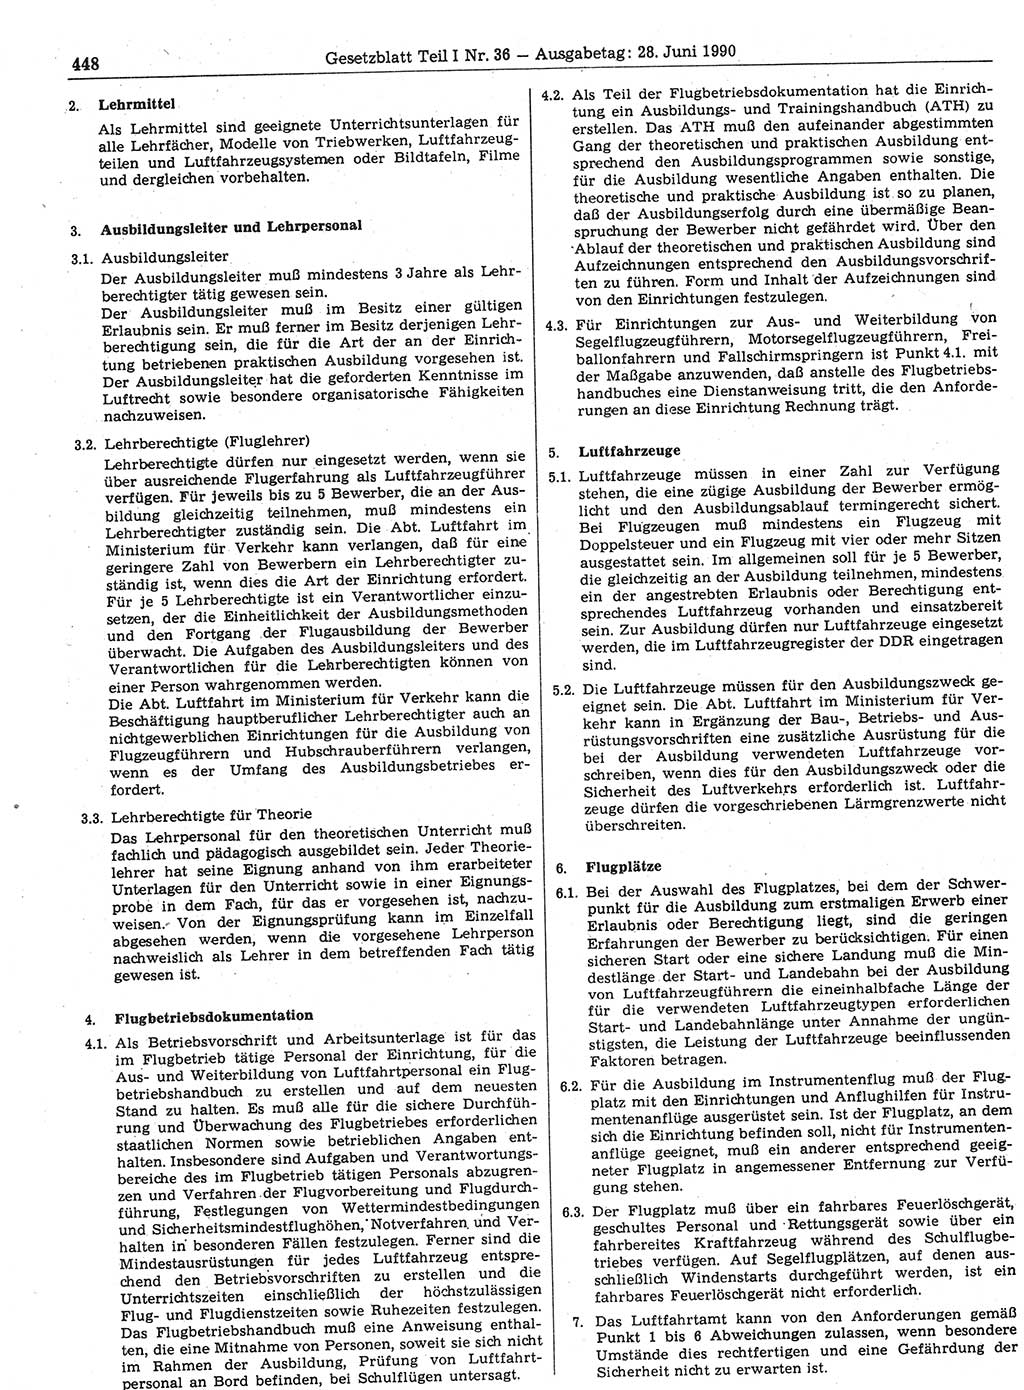 Gesetzblatt (GBl.) der Deutschen Demokratischen Republik (DDR) Teil Ⅰ 1990, Seite 448 (GBl. DDR Ⅰ 1990, S. 448)